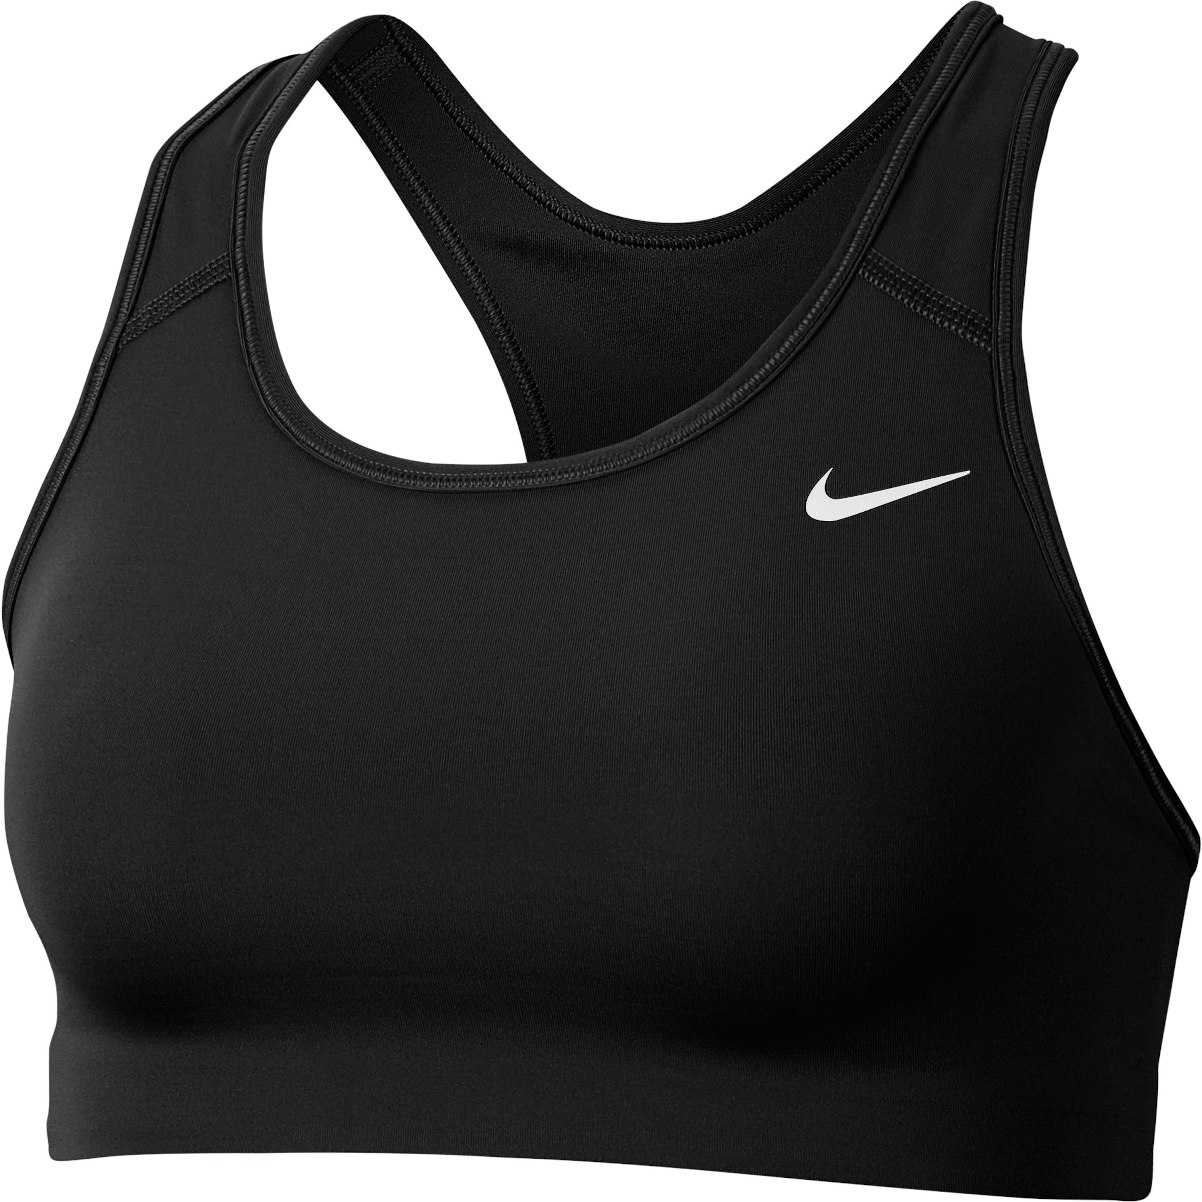 Produktbild von Nike Dri-FIT Swoosh Non Padded Sport-BH mit mittlerem Halt - black/white BV3630-010